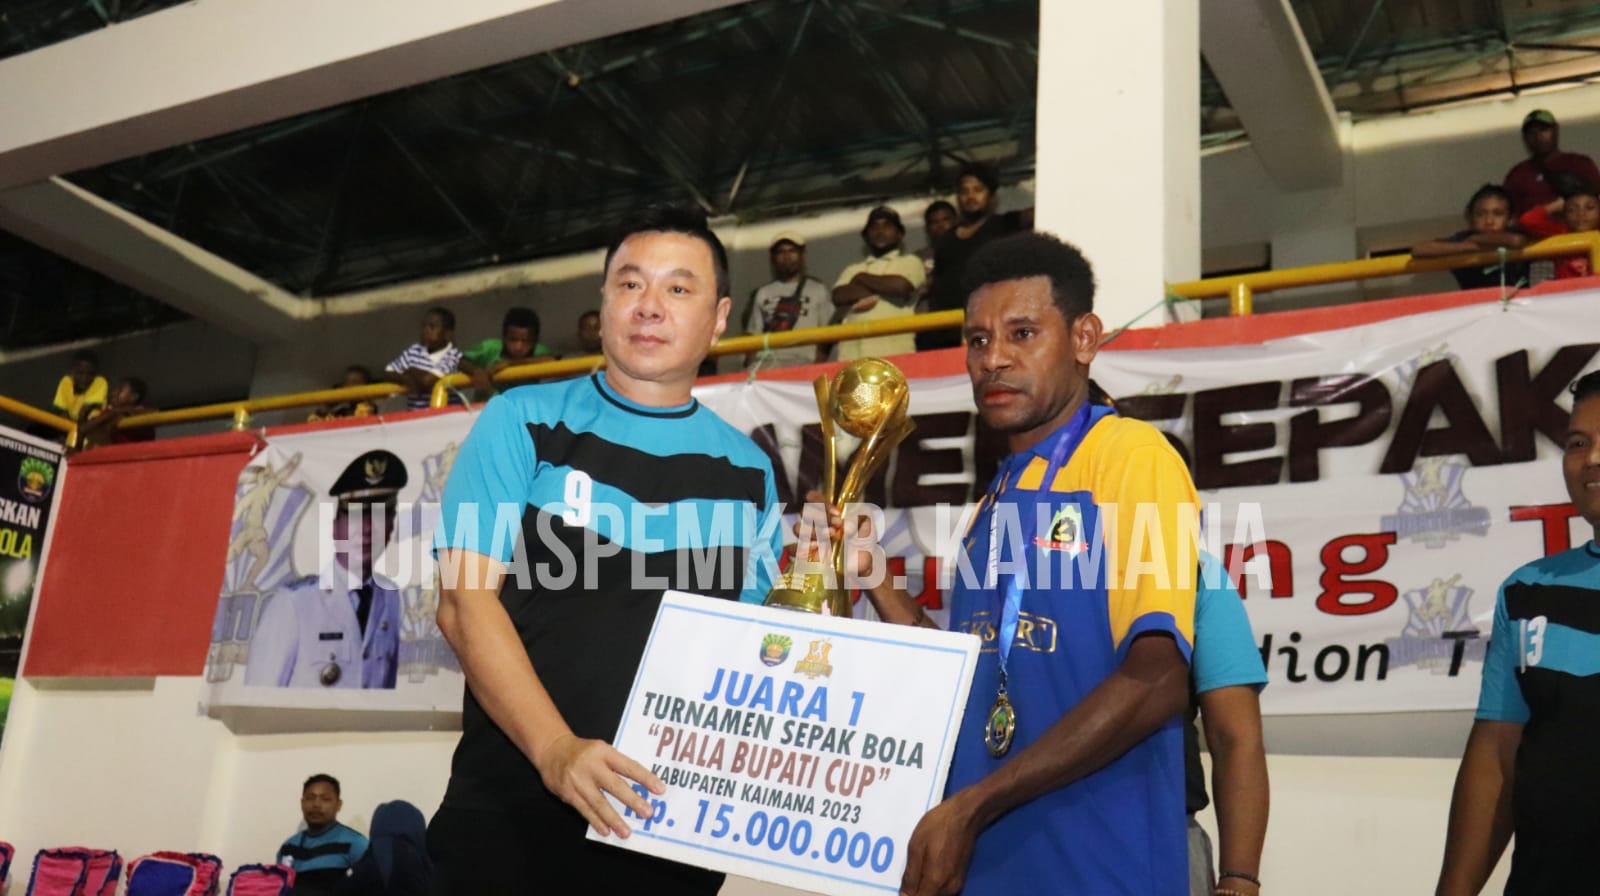 Bupati Cup 2023 Telah Selesai, Bupati Freddy Thie Apresiasi Seluruh Tim (detikindonesia.co.id)